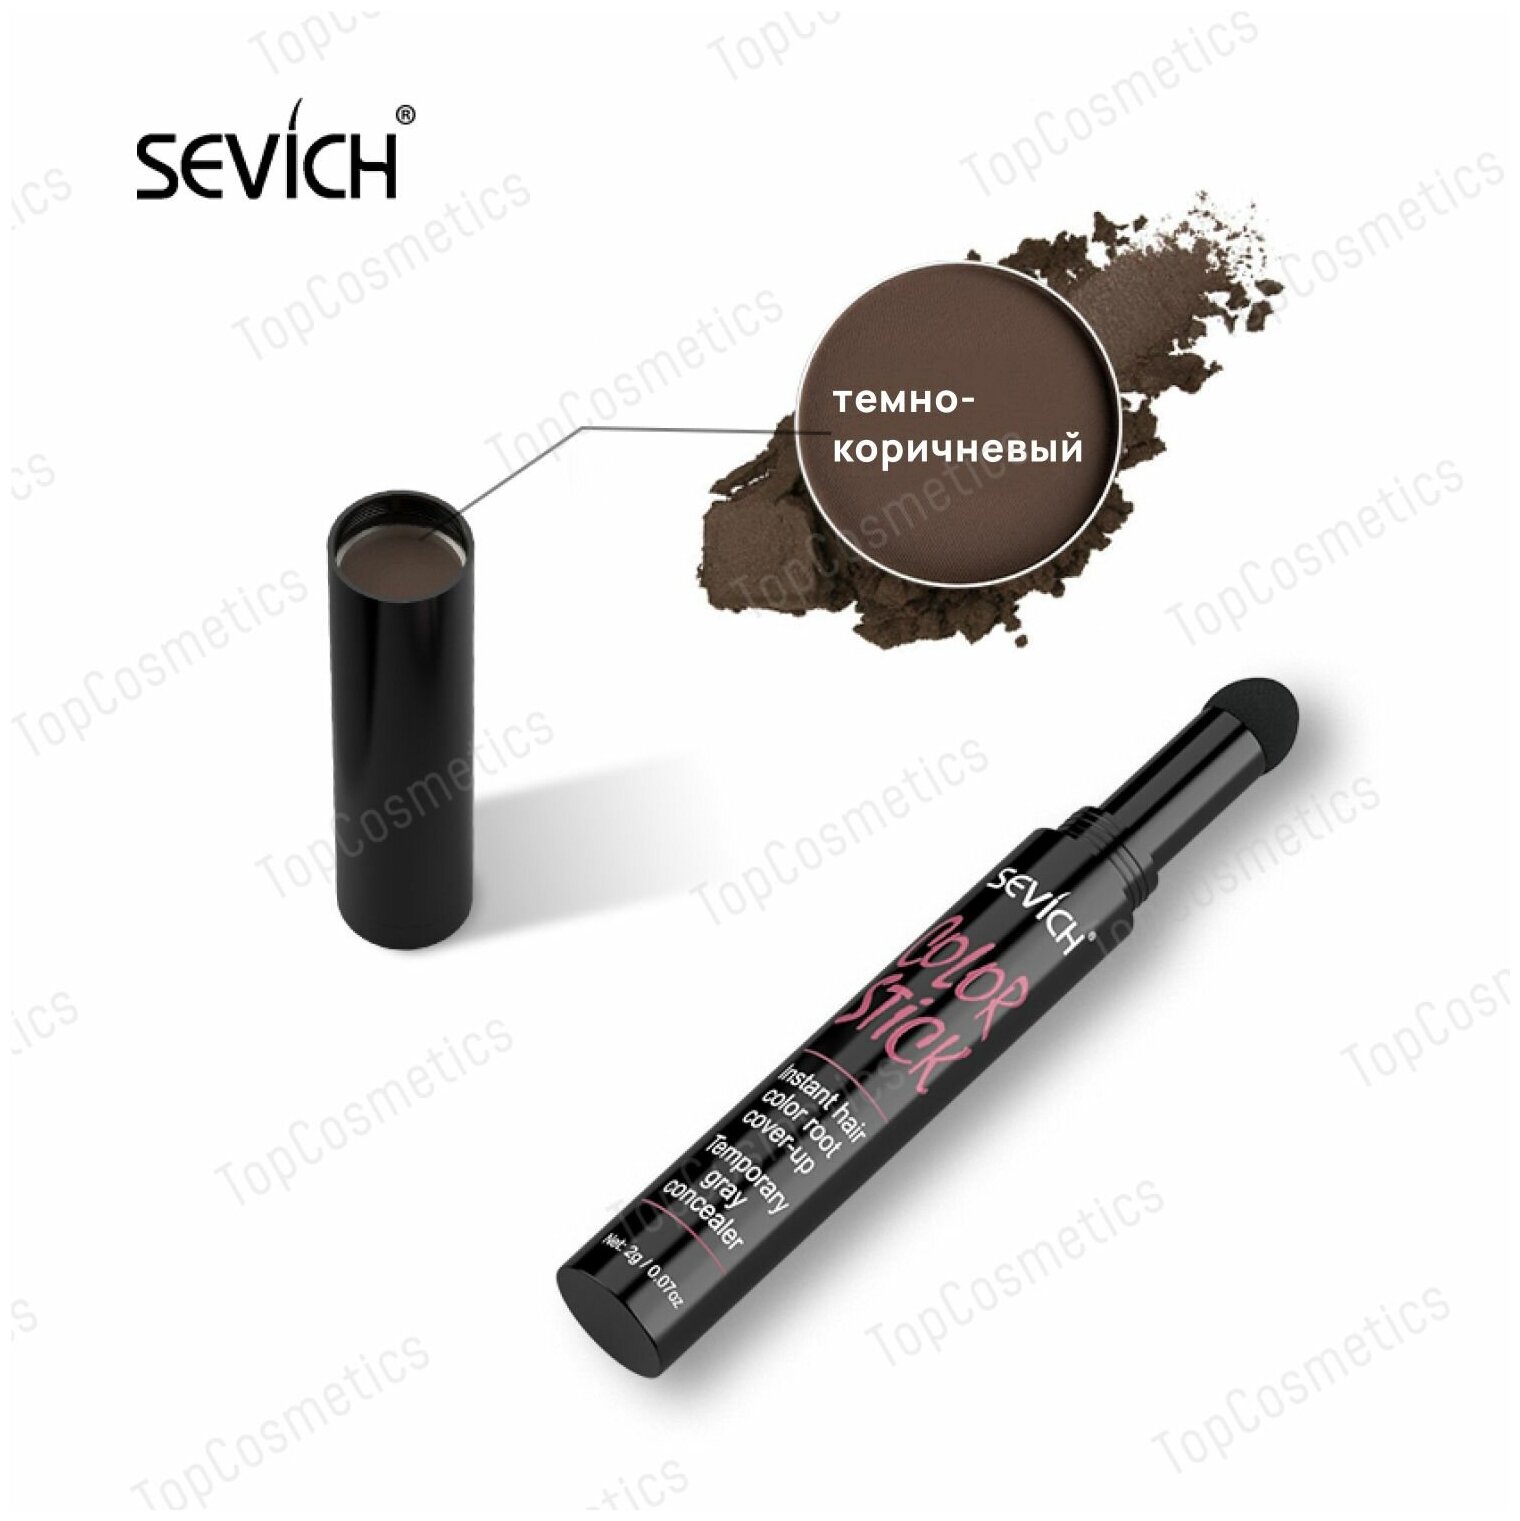 Sevich / Севич Маскирующий стик с пудрой для камуфляжа линии роста волос и пробора, 2 г, темно-коричневый